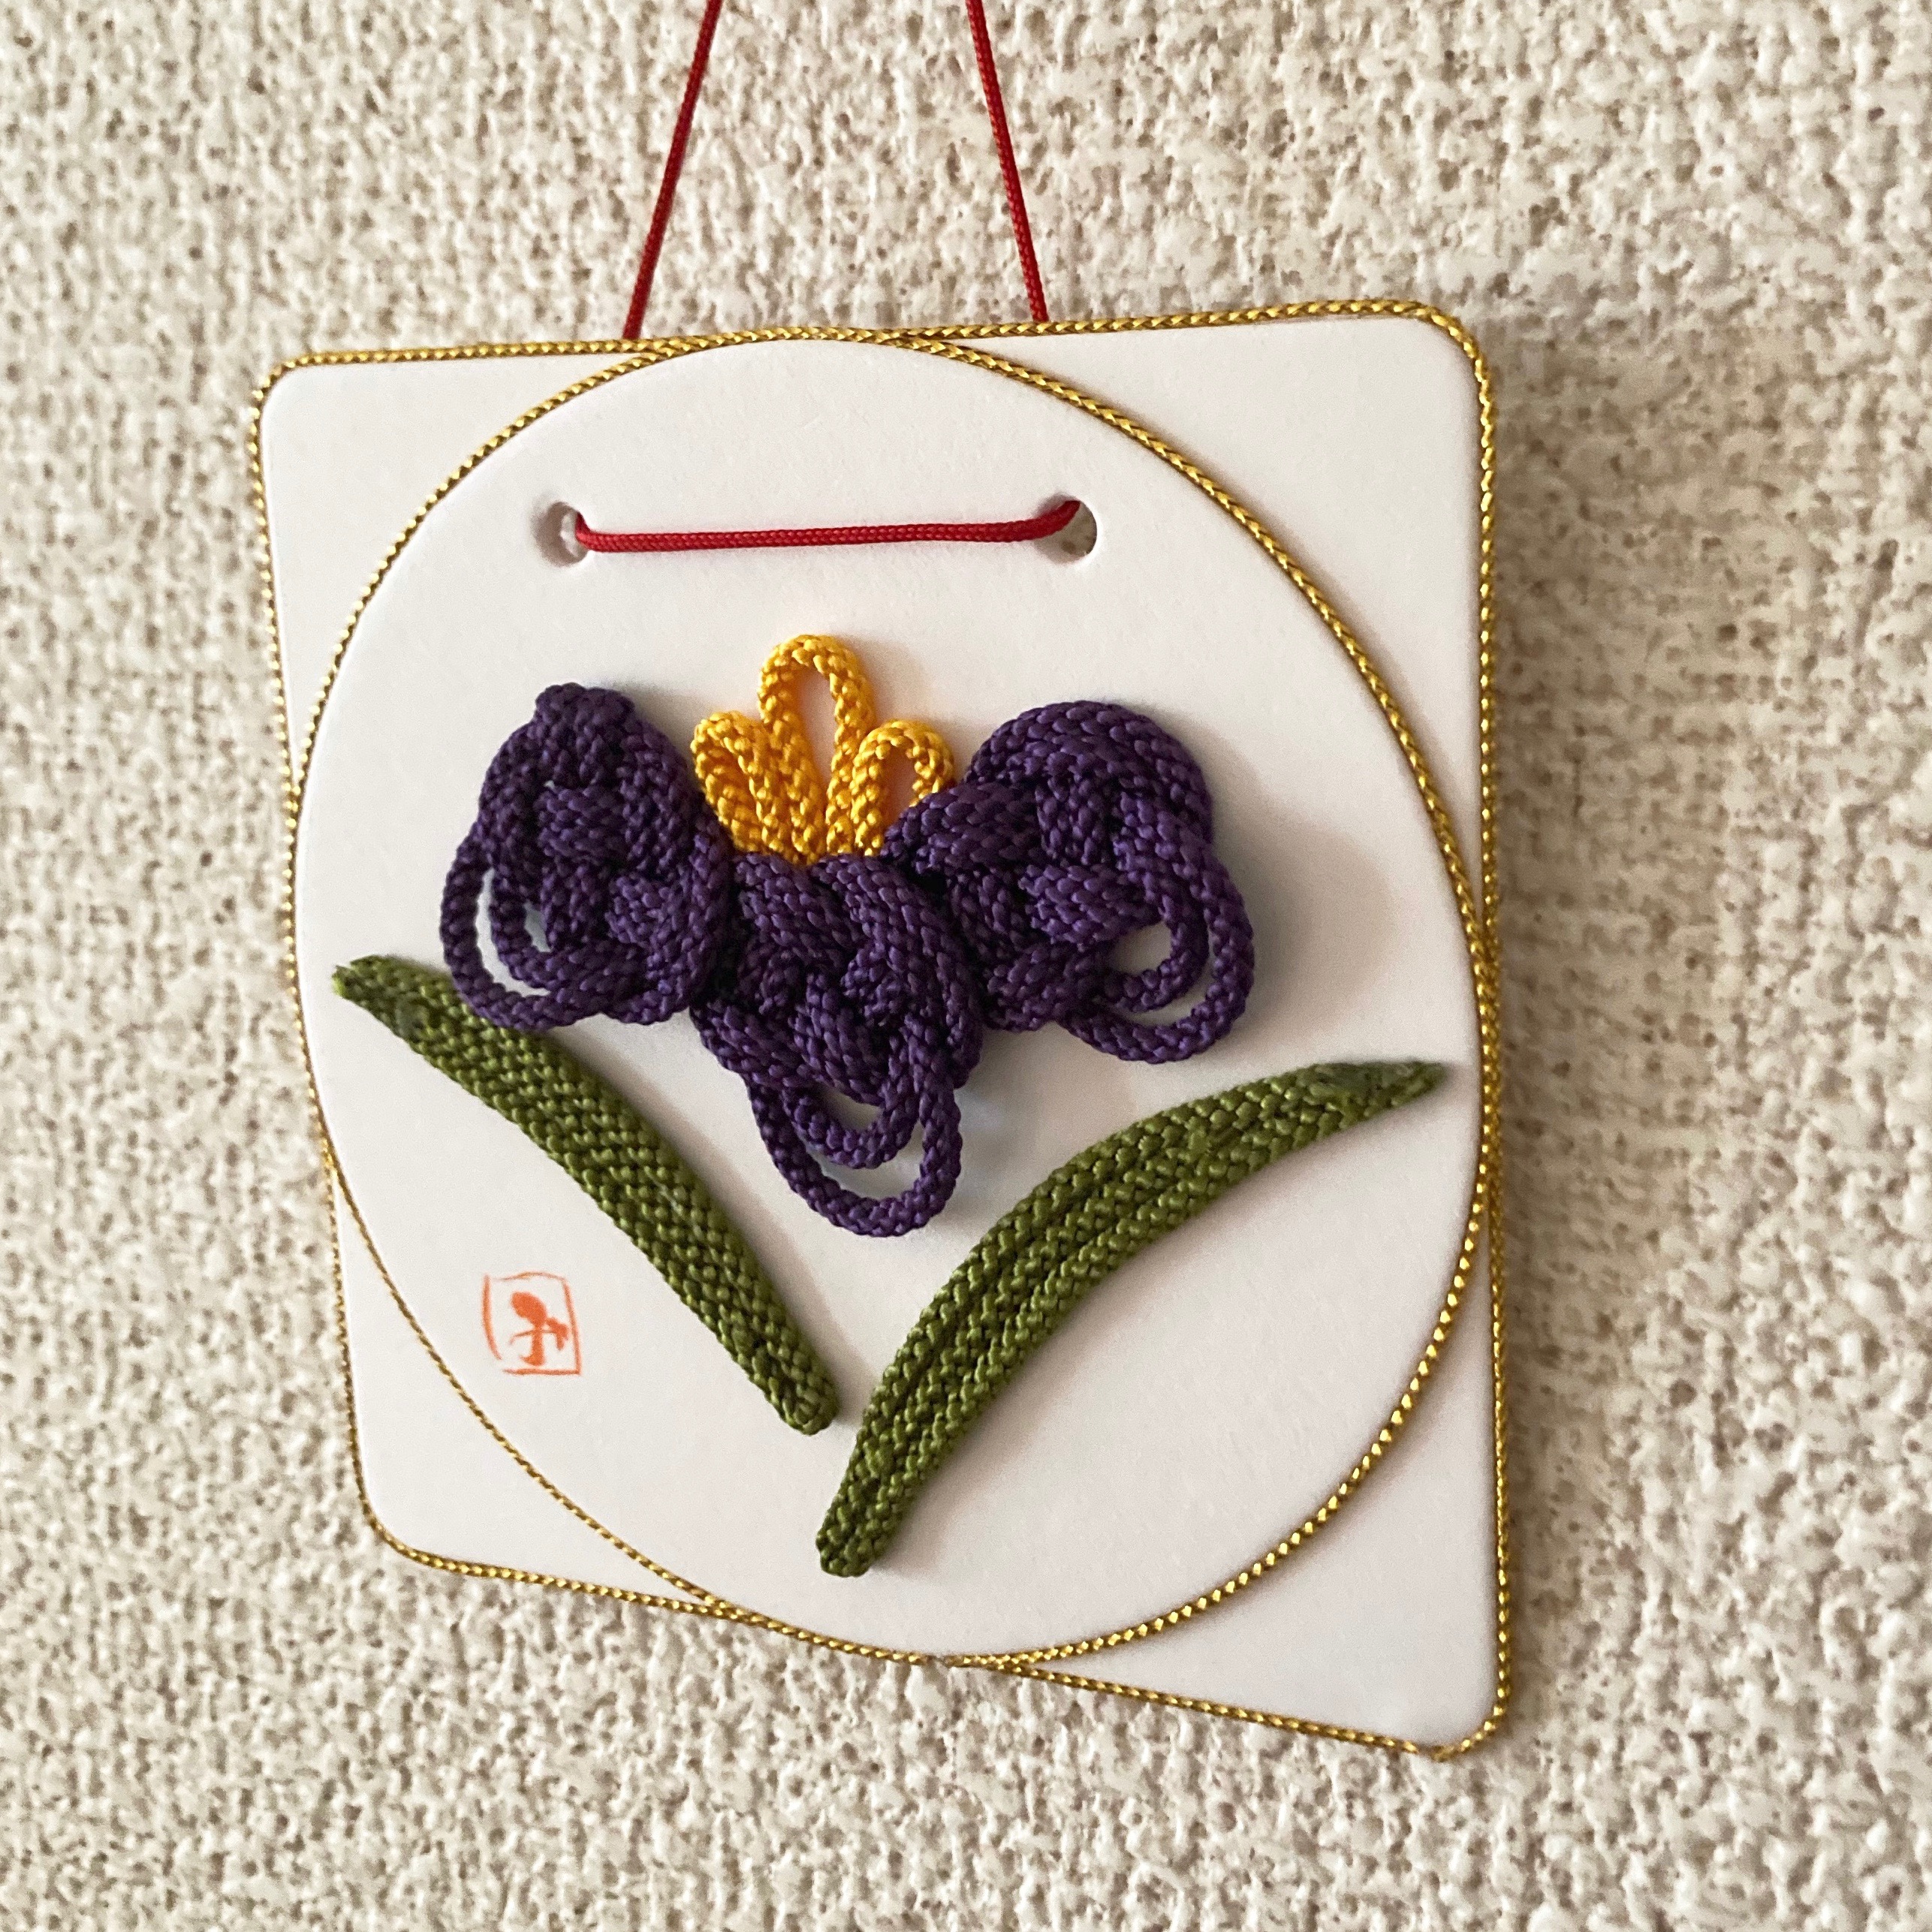 5月の花「菖蒲」を組紐アートで表現しました